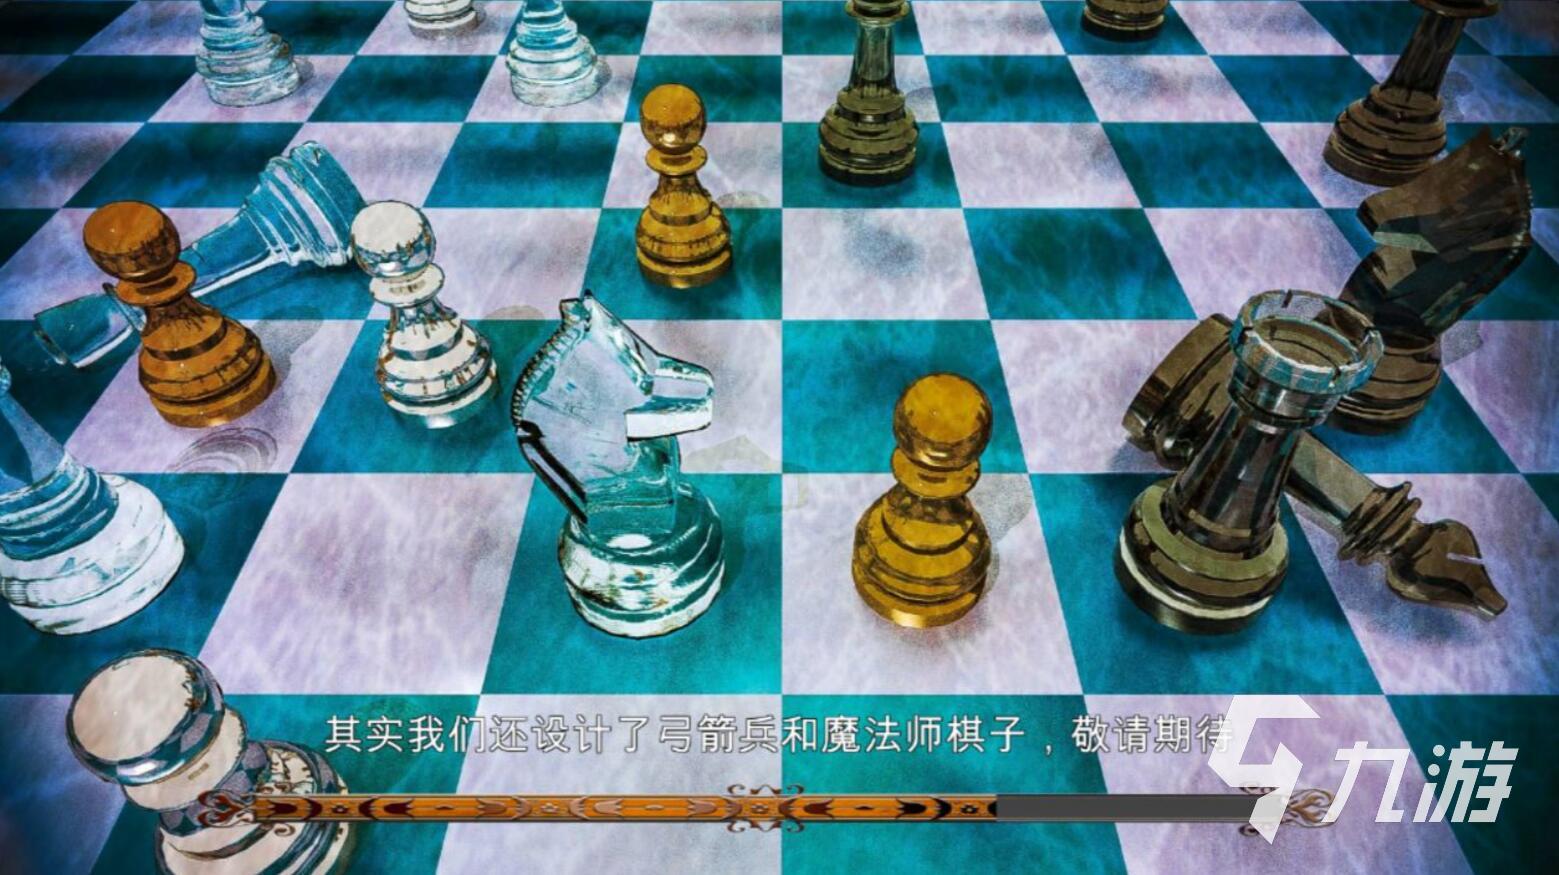 军棋游戏手机版下载免费大全2022 经典军棋游戏手机版推荐